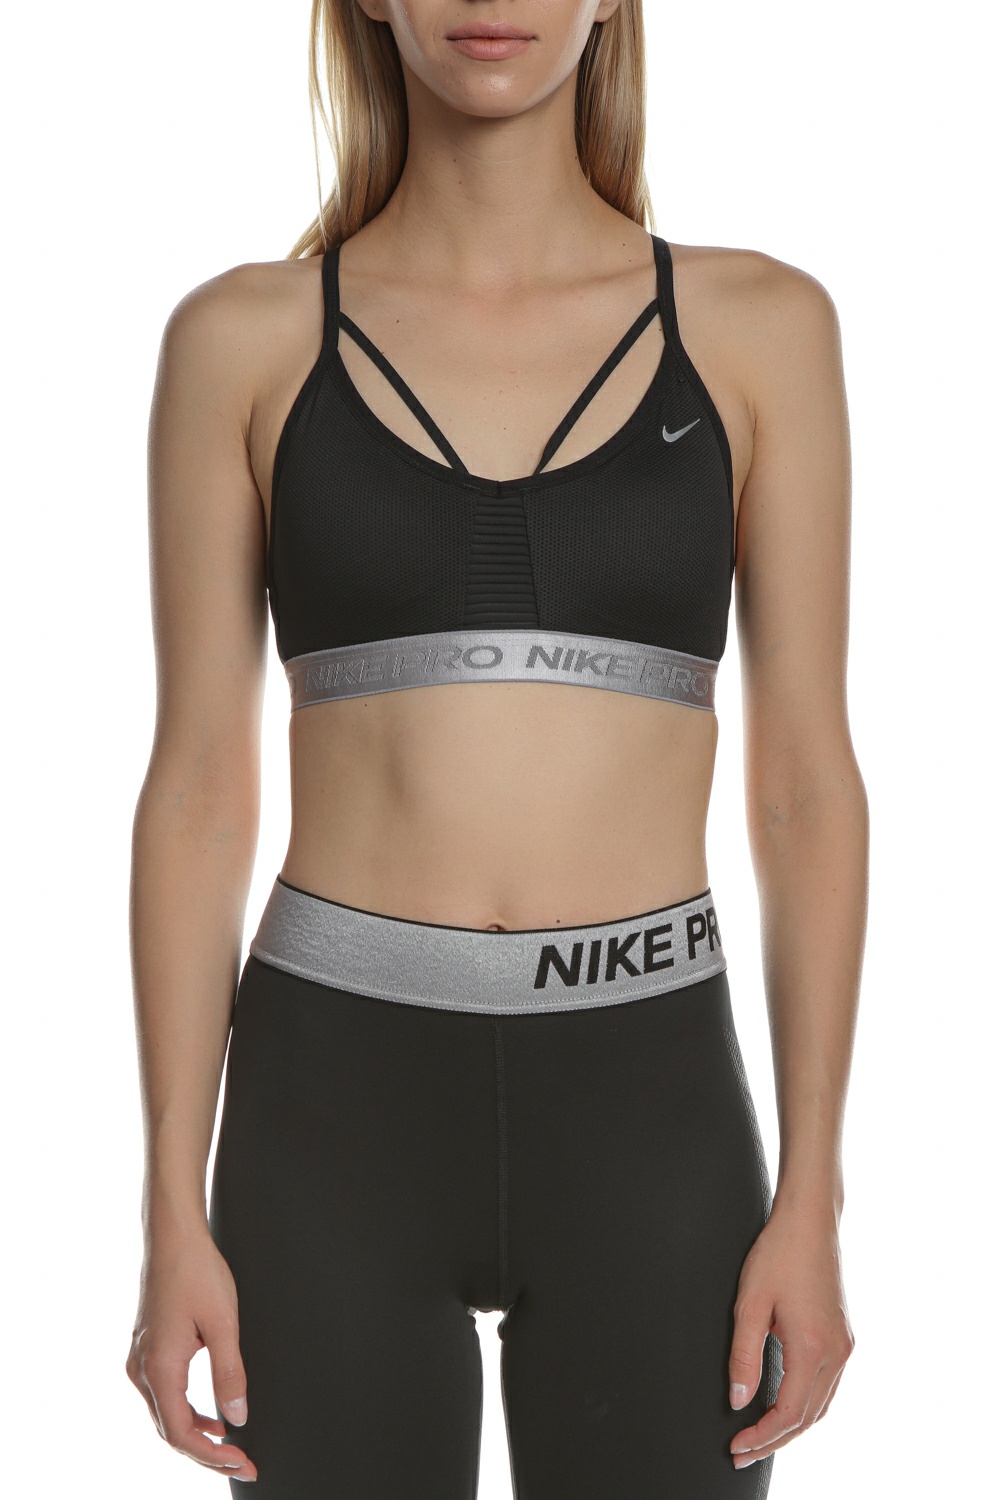 NIKE Γυναικείο αθλητικό μπουστάκι Nike Indy Aeroadapt μαύρο-ασημί